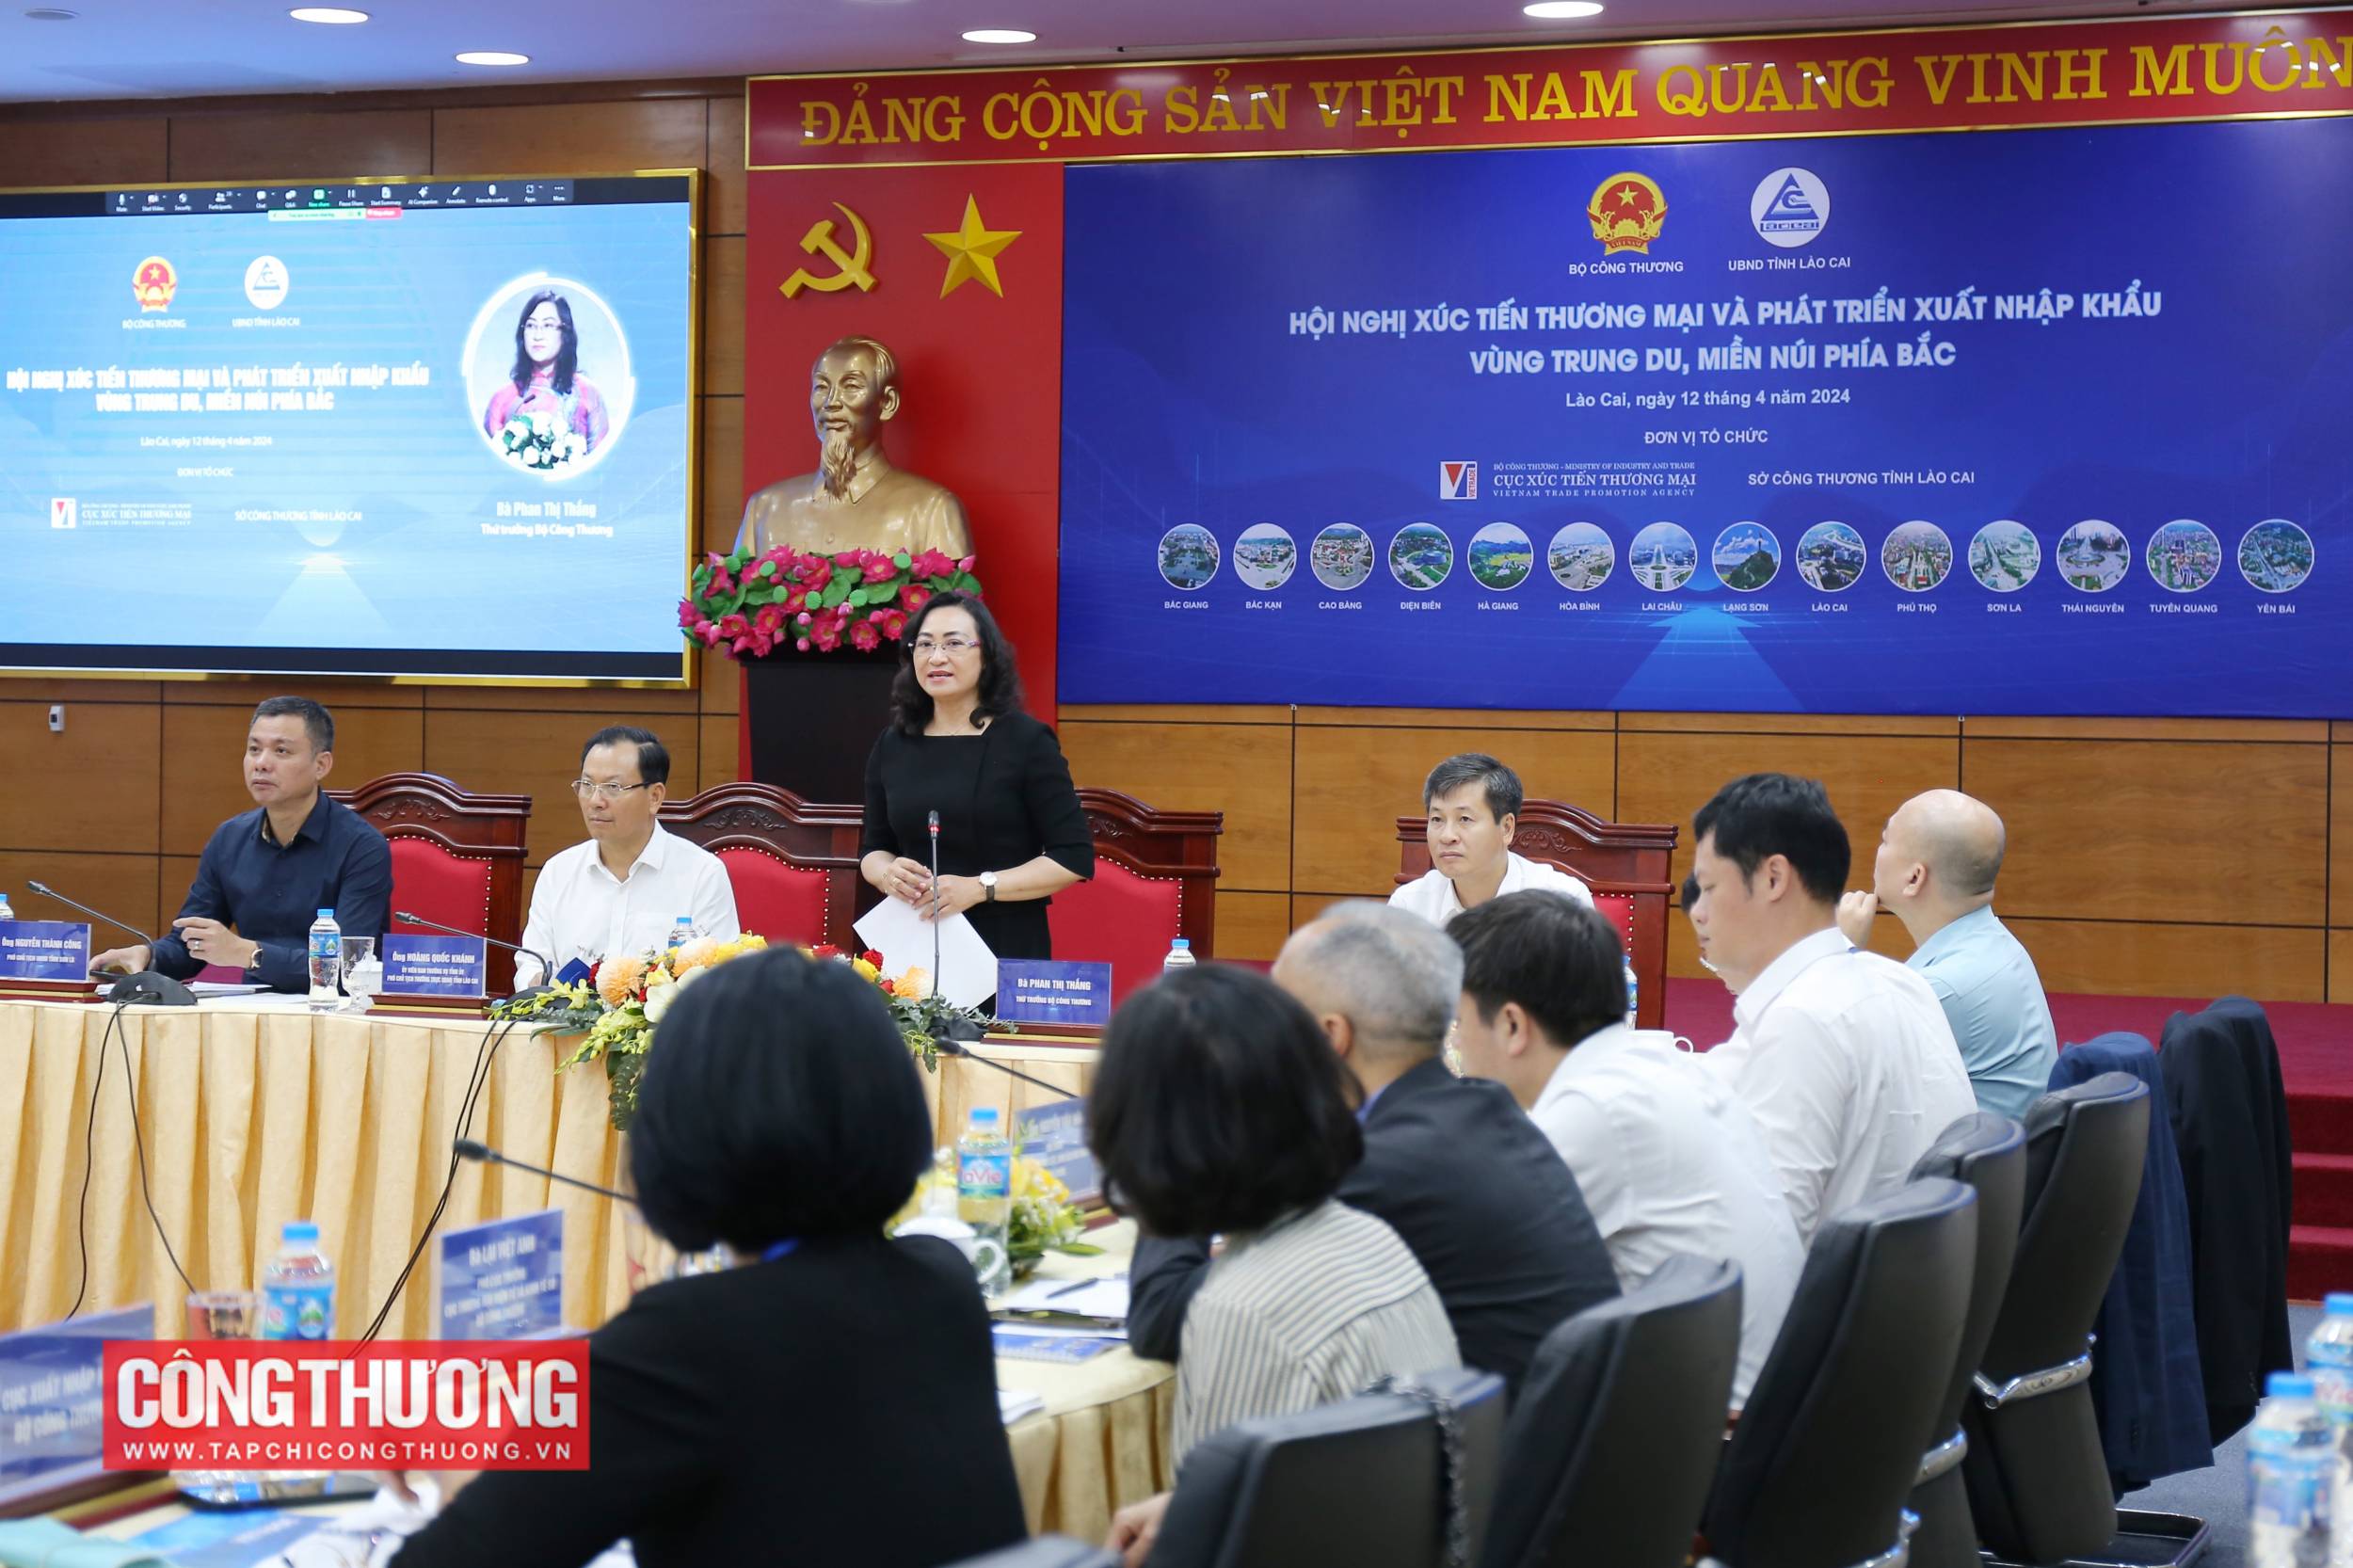 Thứ trưởng Bộ Công Thương Phan Thị Thắng phát biểu tại Hội nghị xúc tiến thương mại và phát triển xuất nhập khẩu vùng Trung du và miền núi phía Bắc do Bộ Công Thương phối hợp với UBND tỉnh Lào Cai tổ chức ngày 12/4/2024 vừa qua.